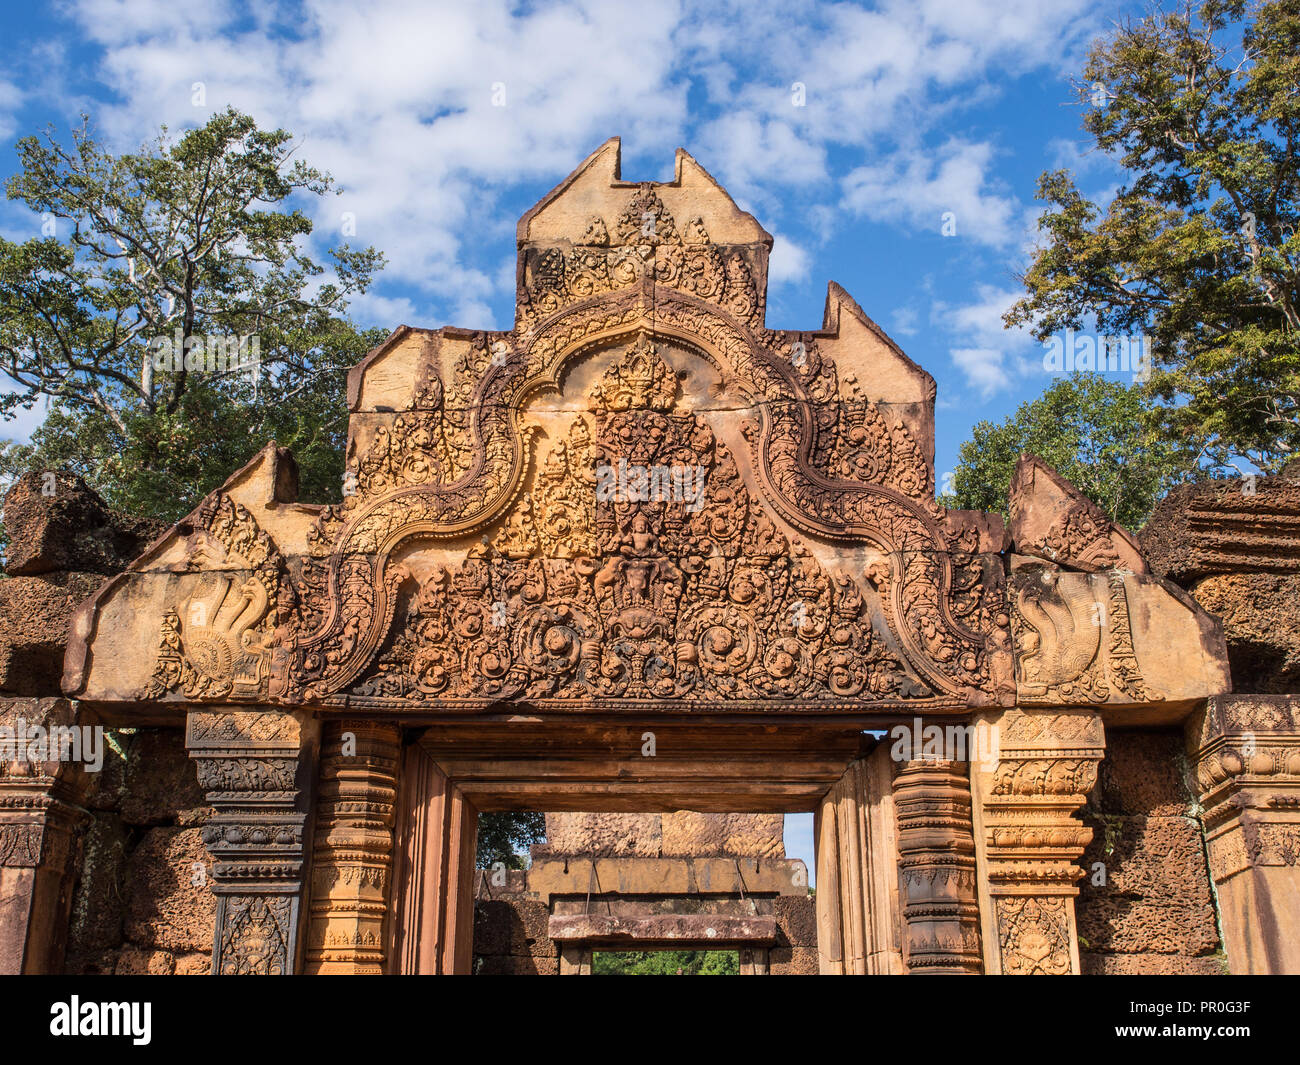 Le grès couleur terre cuite temple de Banteay Srei, Angkor, Site du patrimoine mondial de l'UNESCO, Siem Reap, Cambodge, Indochine, Asie du Sud-Est, l'Asie Banque D'Images